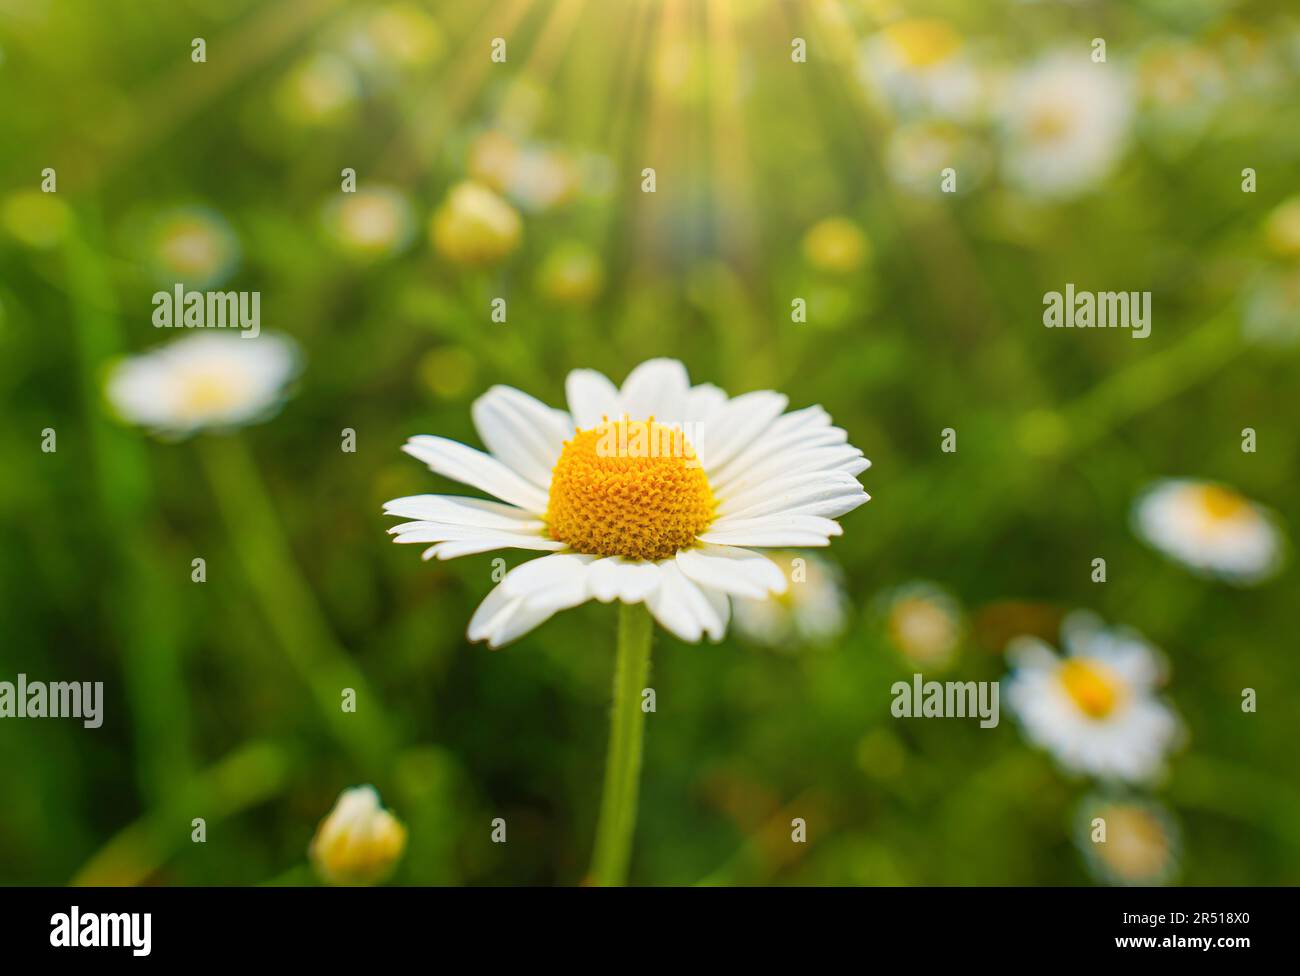 Сlose-up d'une pâquerette vibrante dans un champ, illuminée par des rayons du soleil. Pureté, innocence et simplicité. Banque D'Images